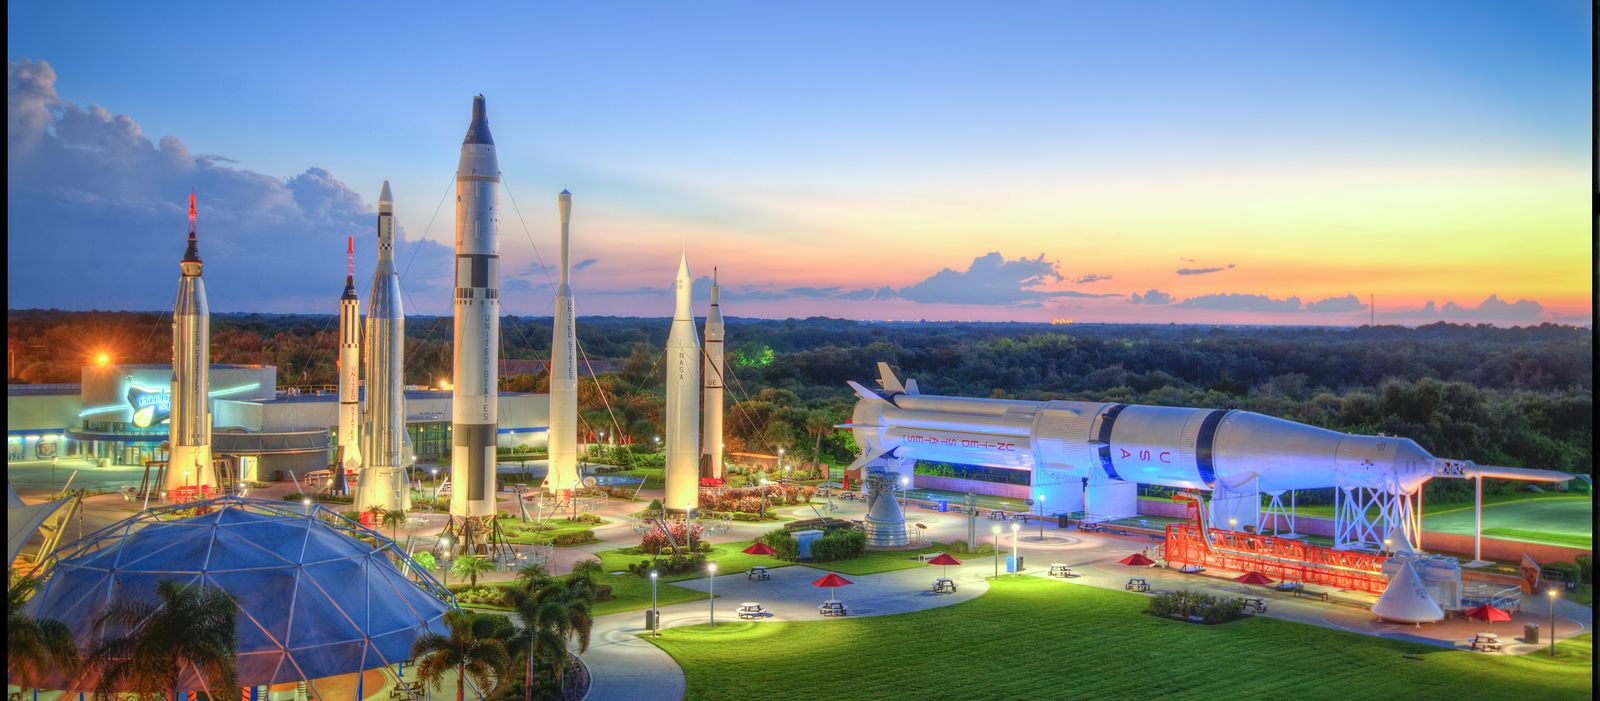 Impressionen des Kennedy Space Center in Florida